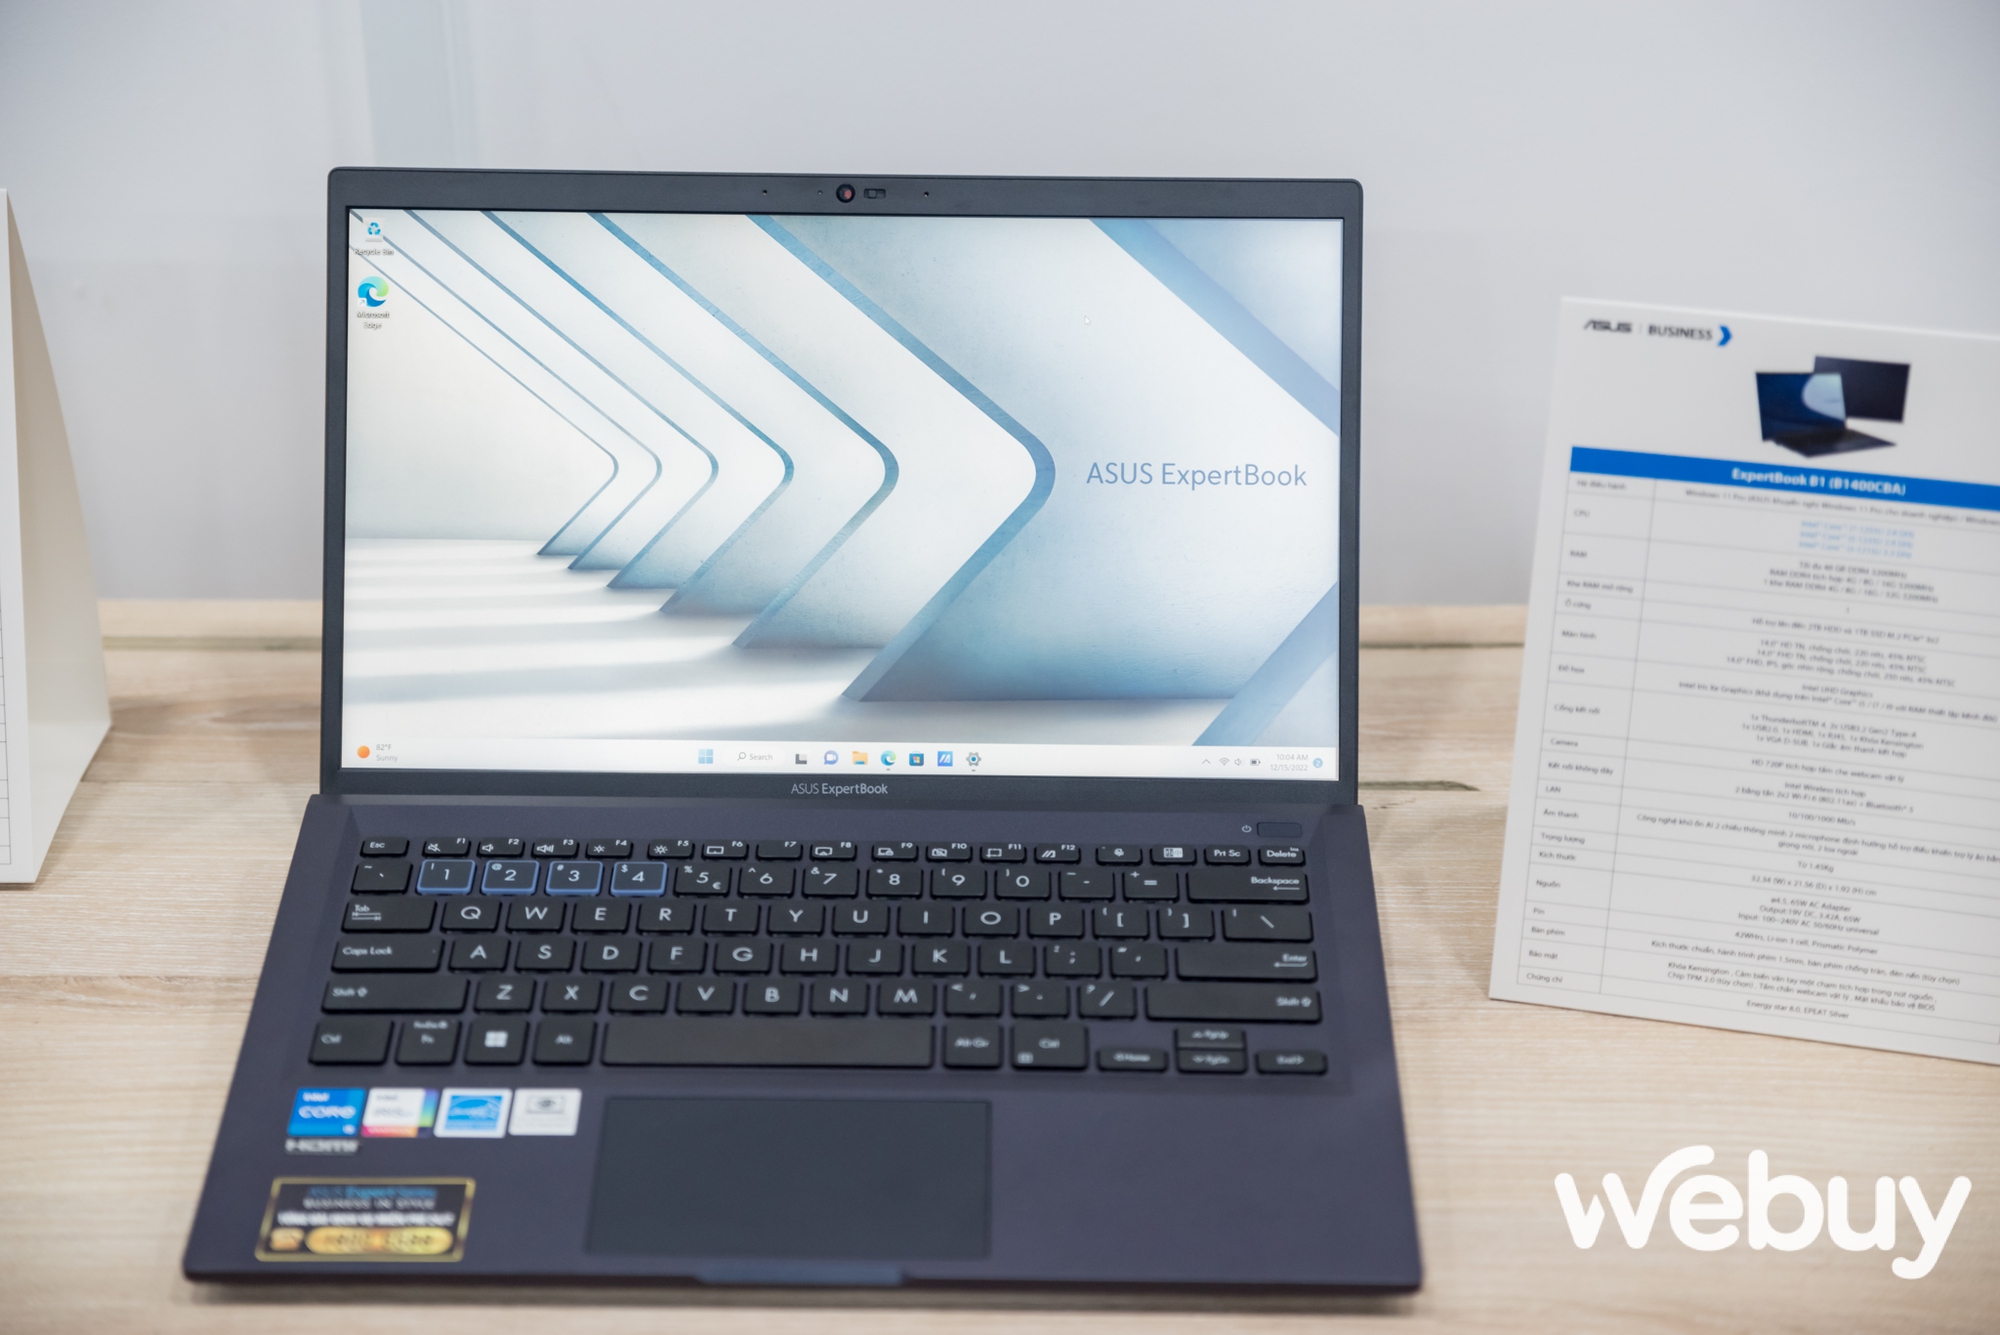 ASUS giới thiệu loạt laptop ExpertBook thế hệ mới, đa dạng lựa chọn hướng đến đối tượng khách hàng doanh nghiệp - Ảnh 2.